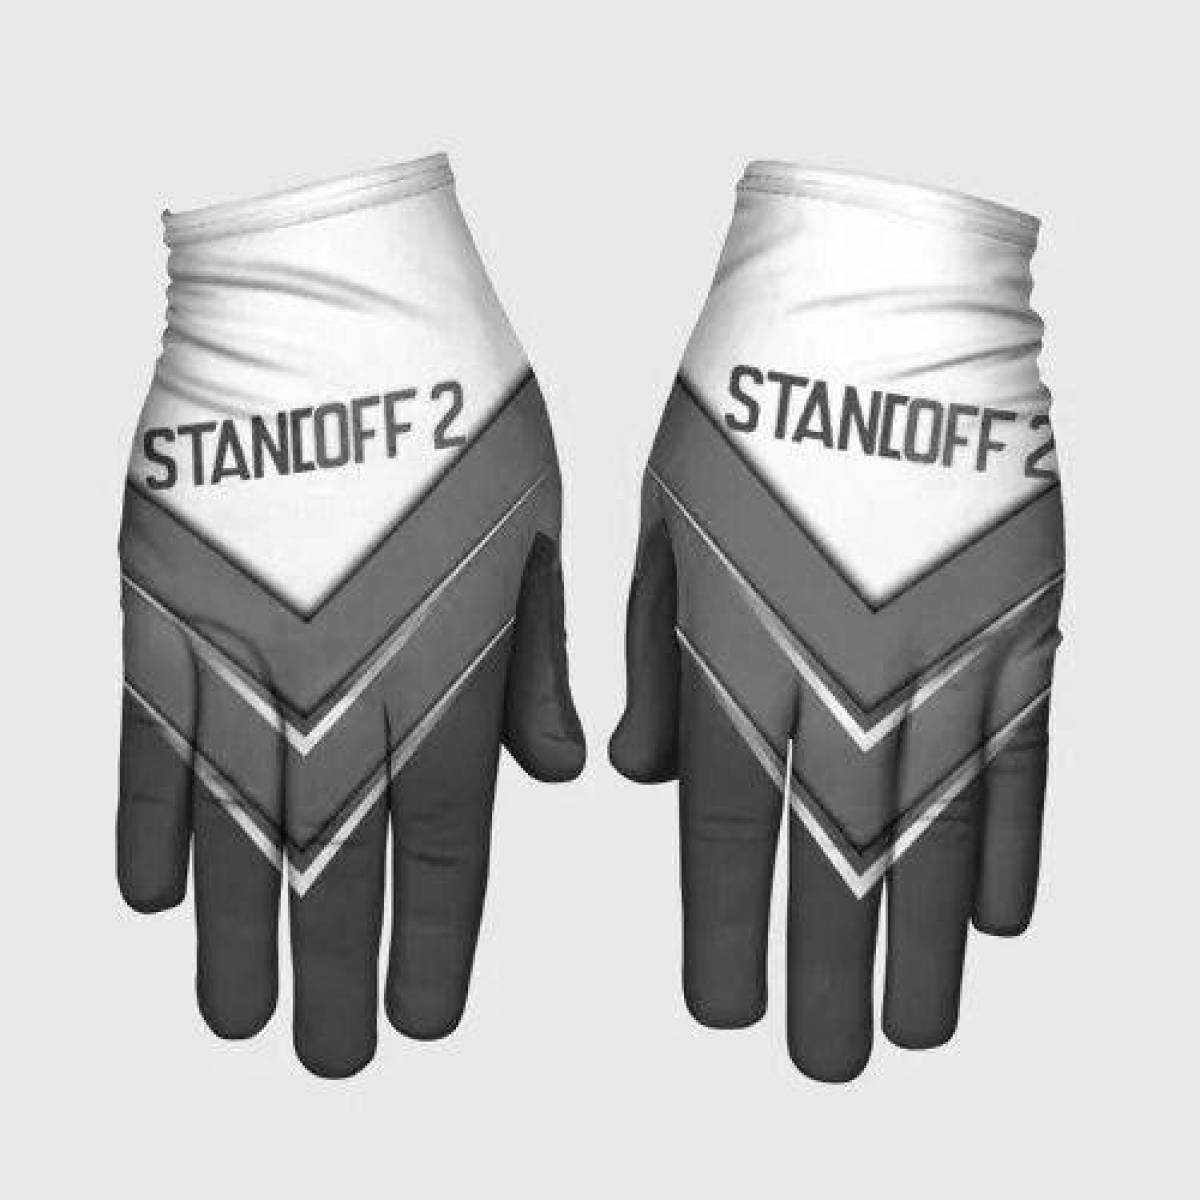 Фото Игривая страница раскраски перчаток standoff 2